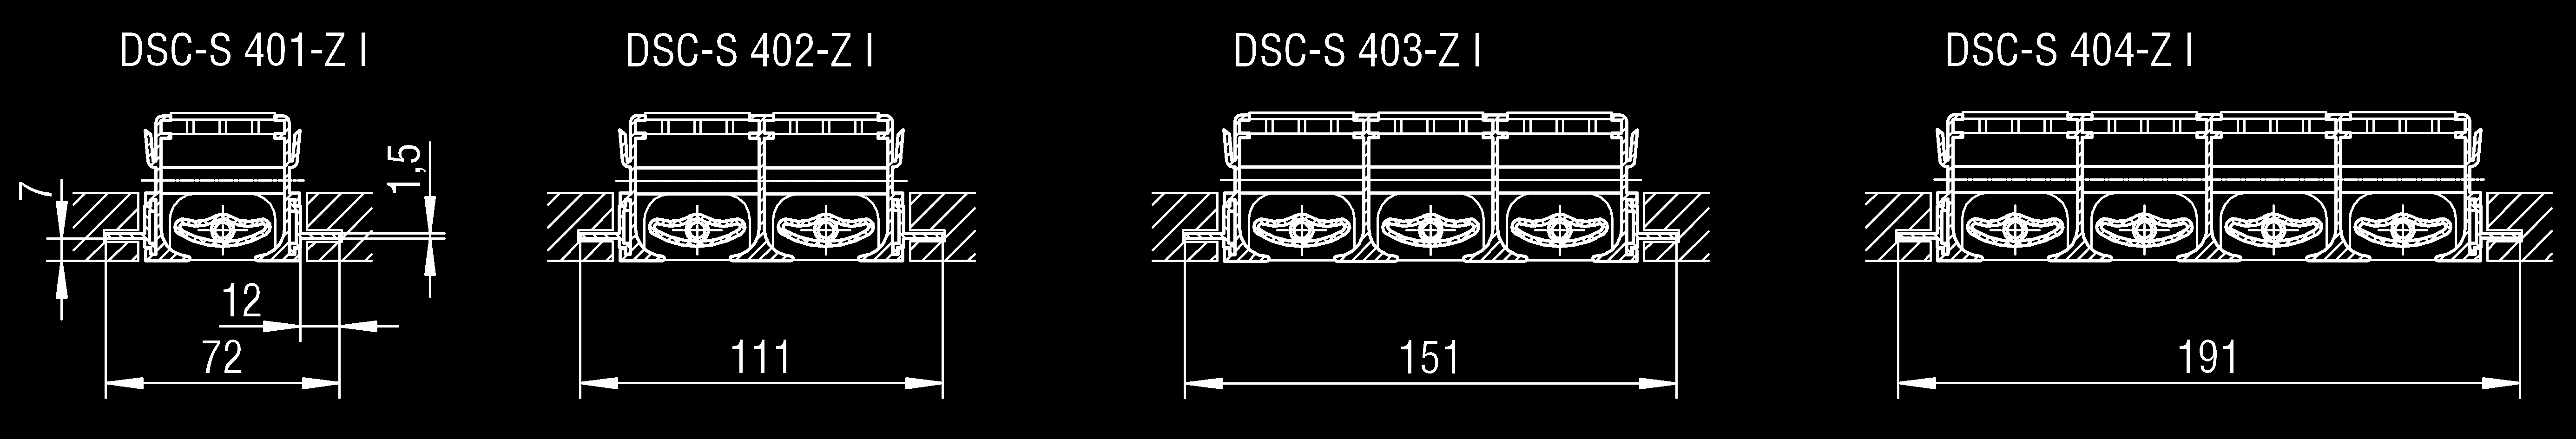 Profil dodatkowy do DSC-S Profil dodatkowy Z I: montaż w suficie płytowym Profil dodatkowy Z II: połączenie z